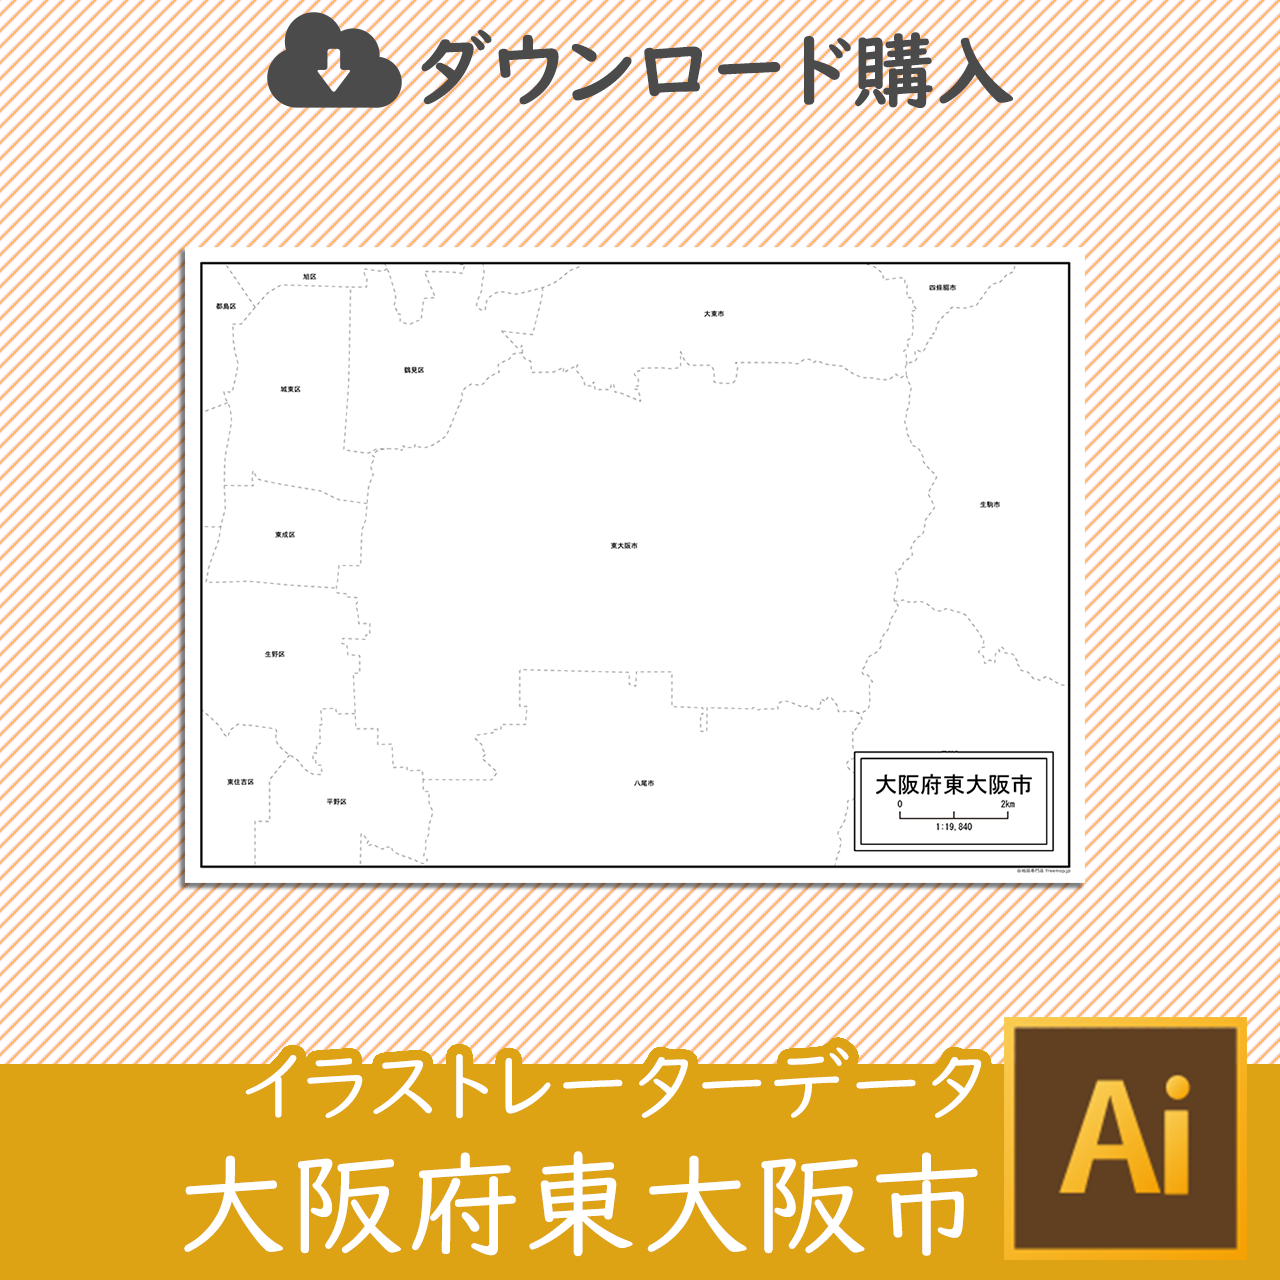 東大阪市のaiデータのサムネイル画像